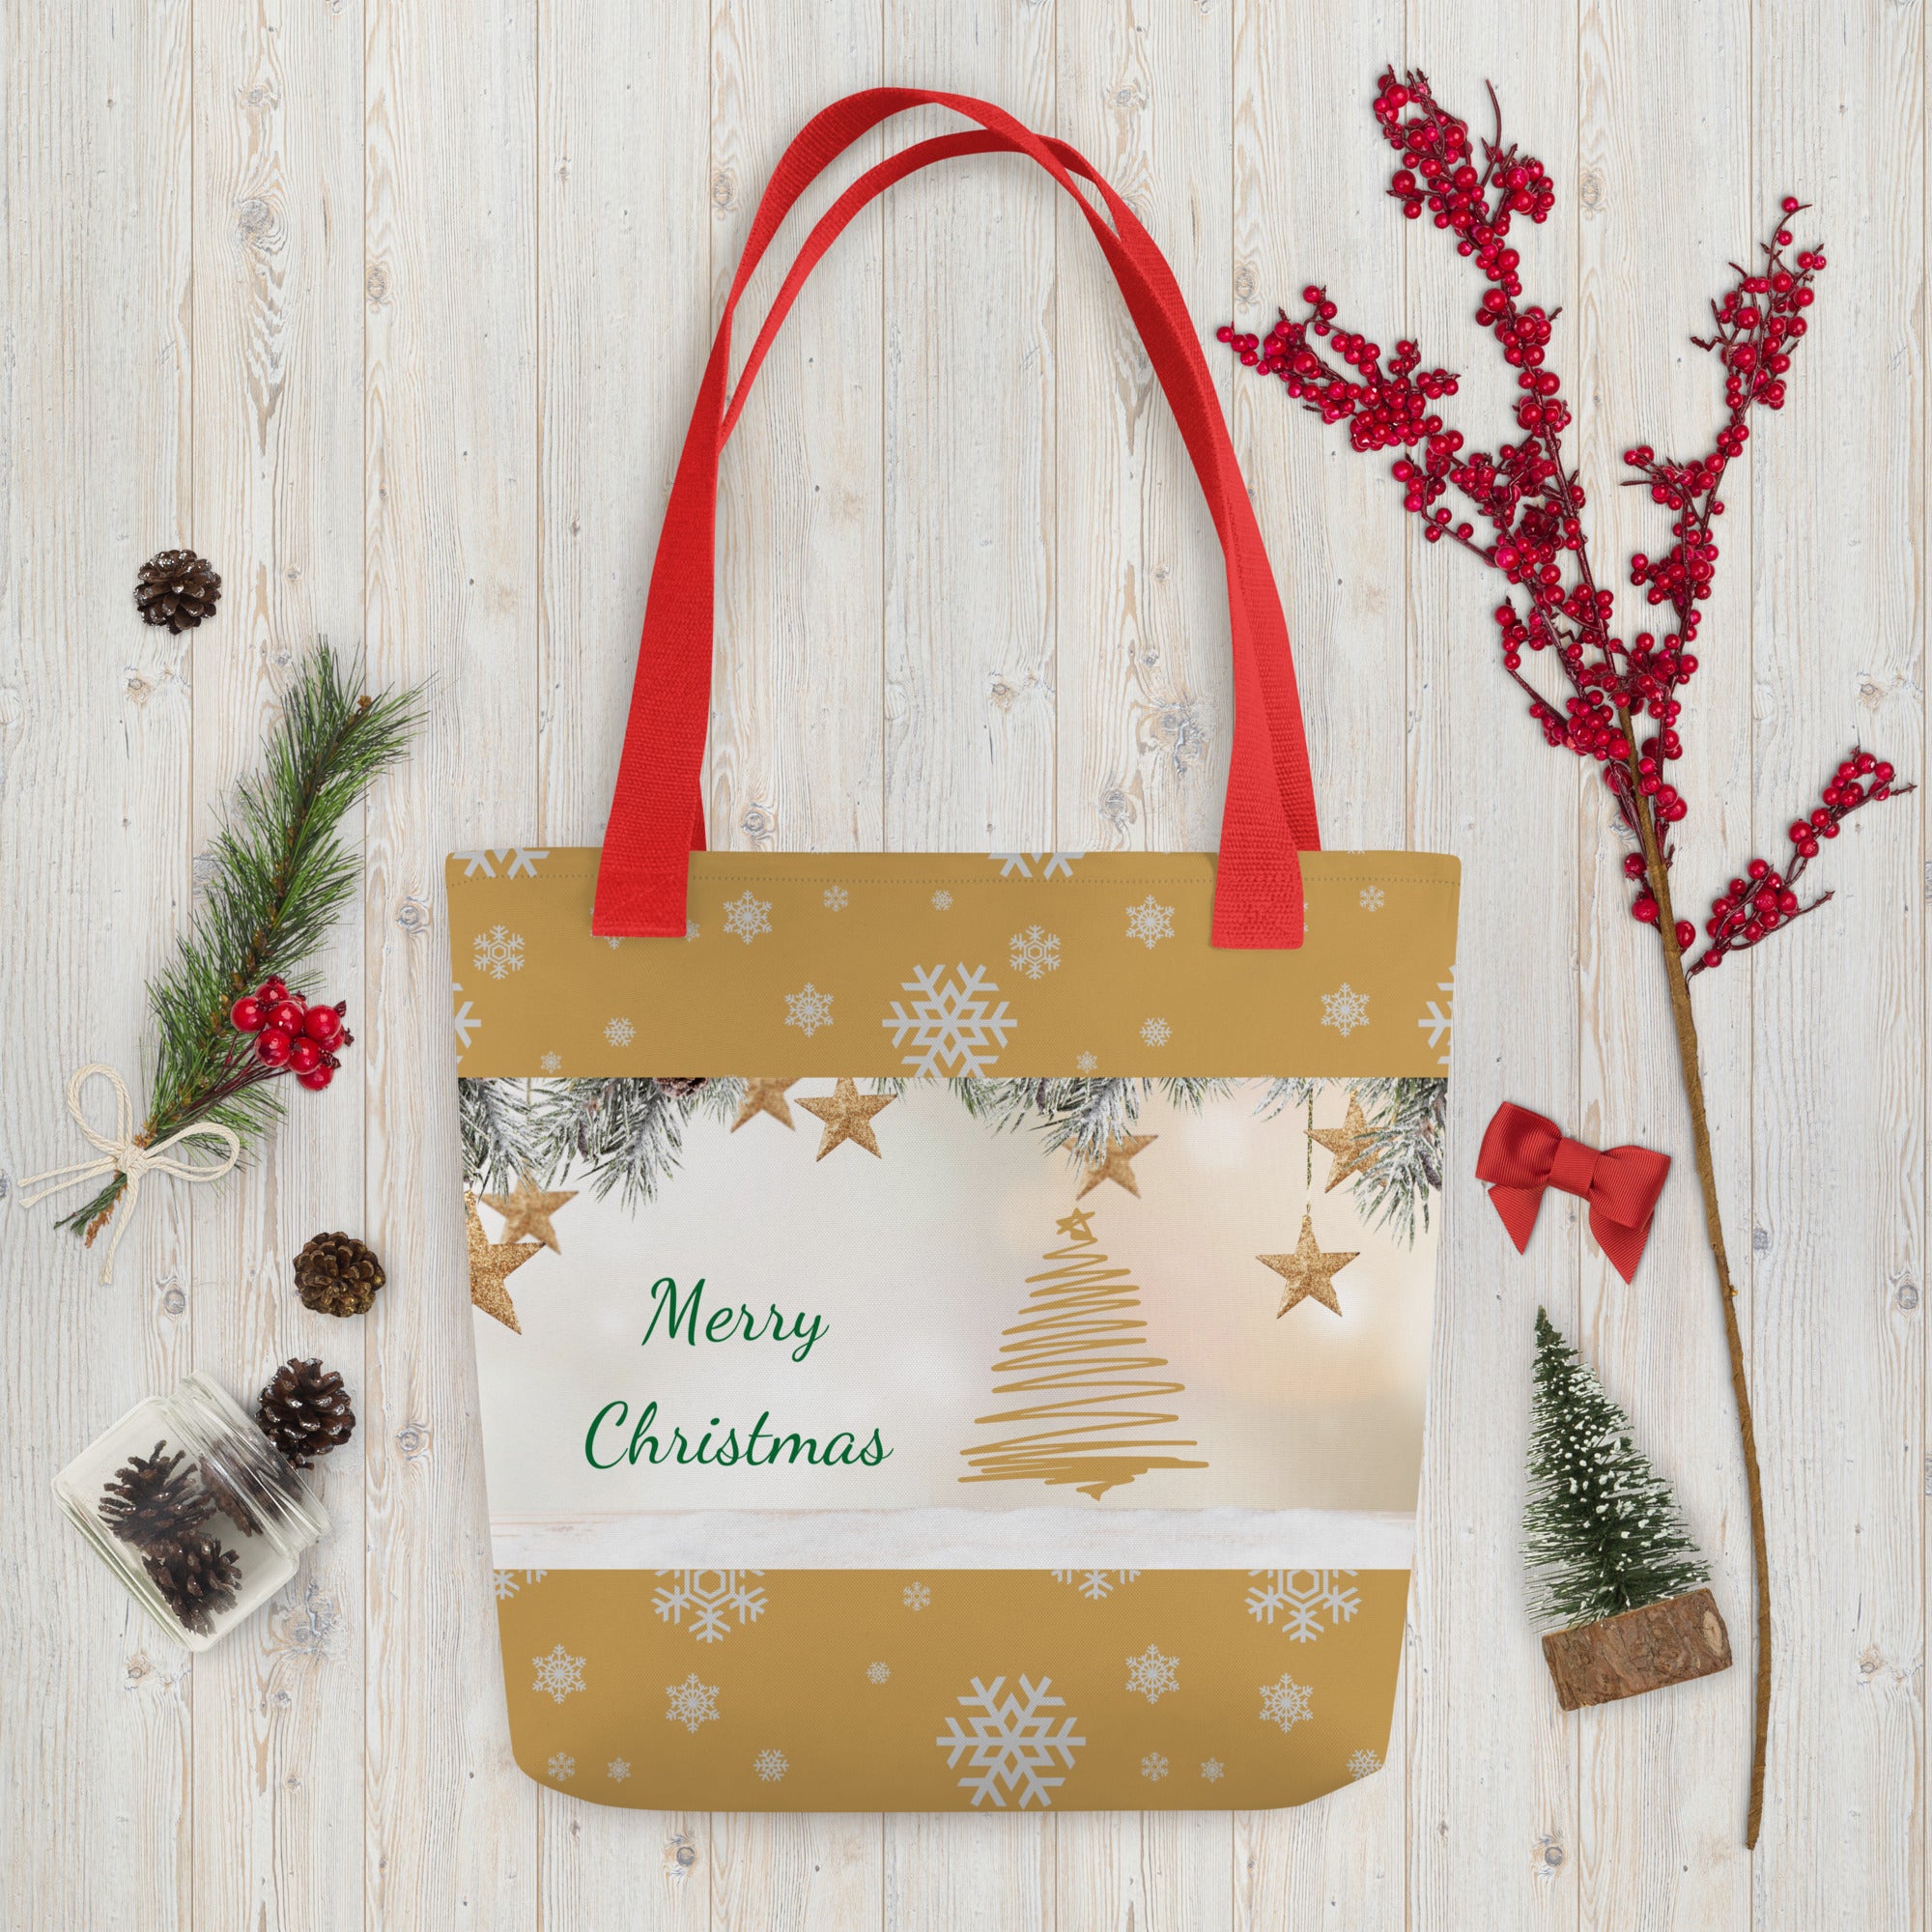 Merry Christmas Tote bag